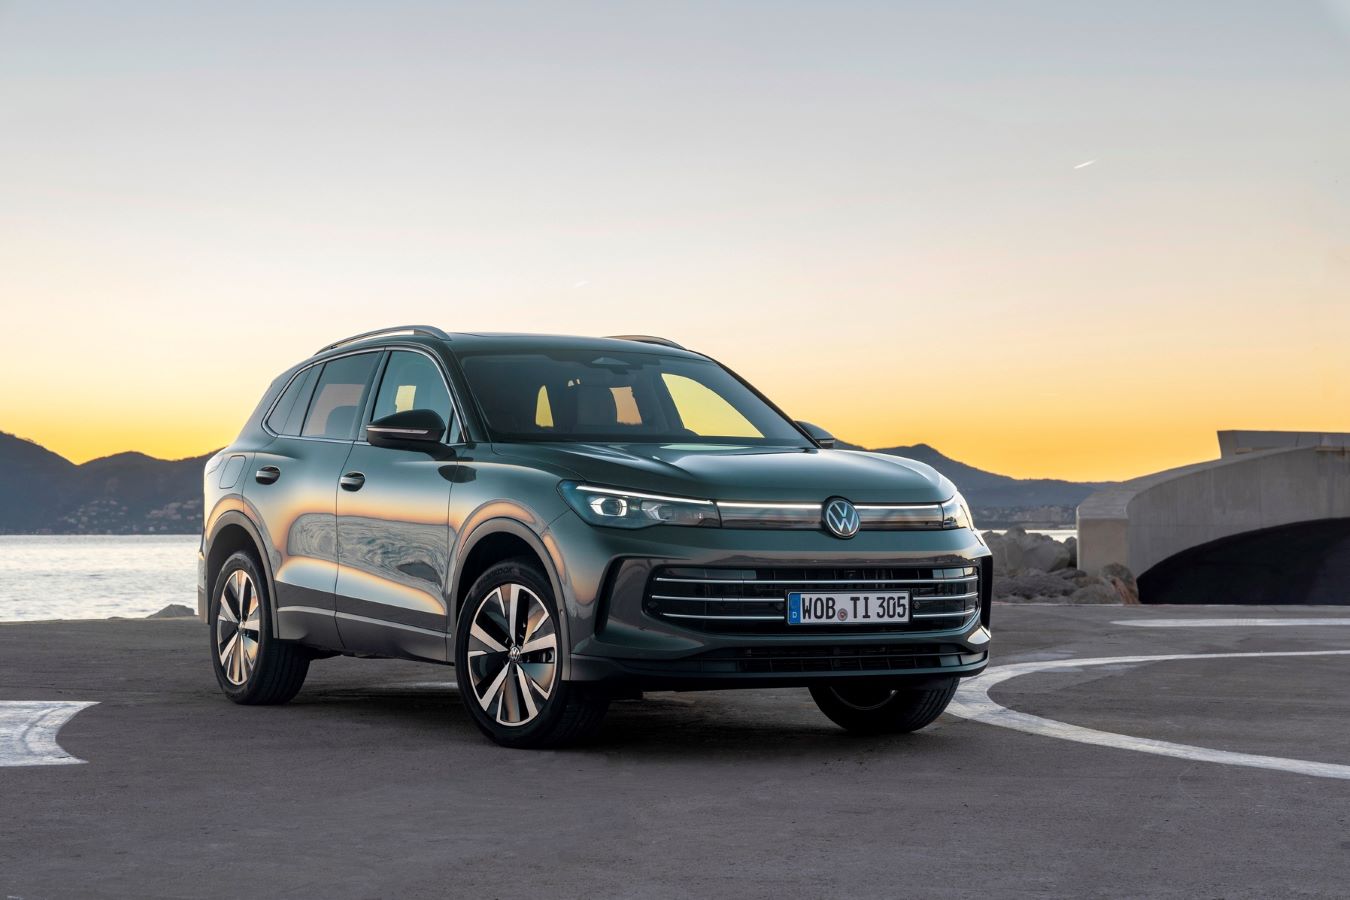 Novo Volkswagen Tiguan obtém classificação máxima de segurança nos testes Euro NCAP